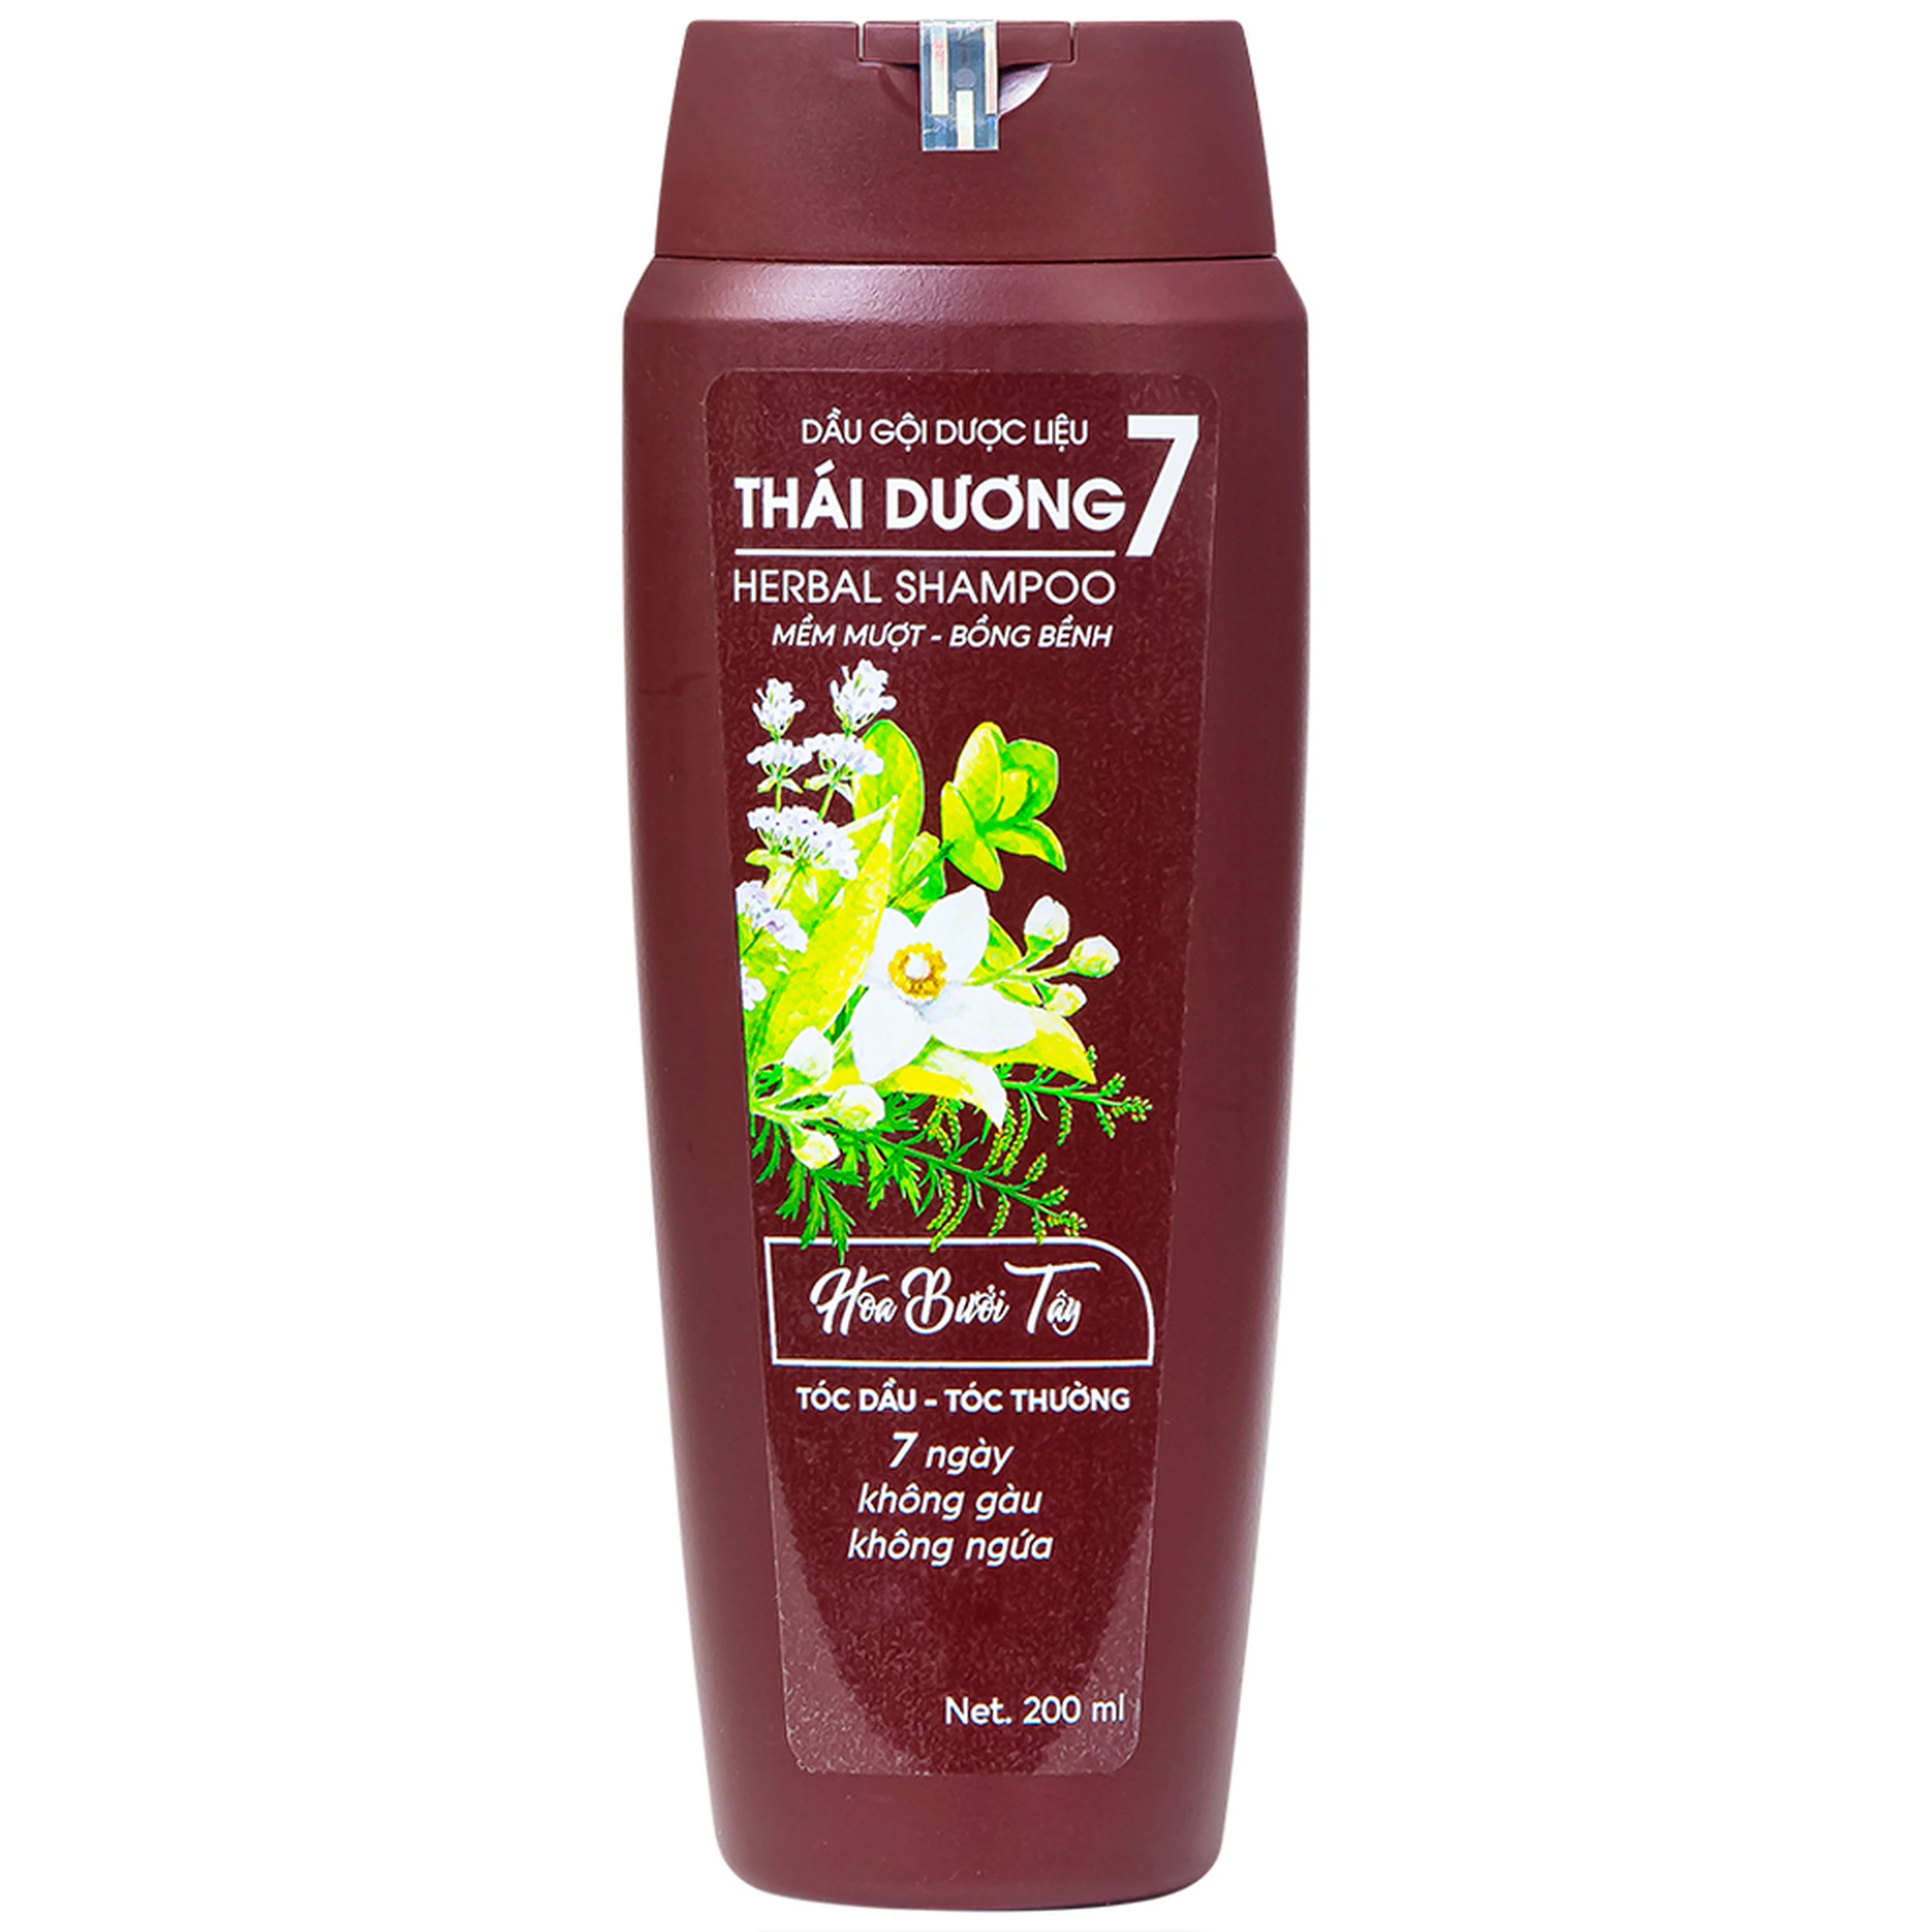 Dầu gội dược liệu Thái Dương 7 hương hoa bưởi sạch gàu, không ngứa, giảm rụng tóc cho tóc dầu, tóc thường (200ml)